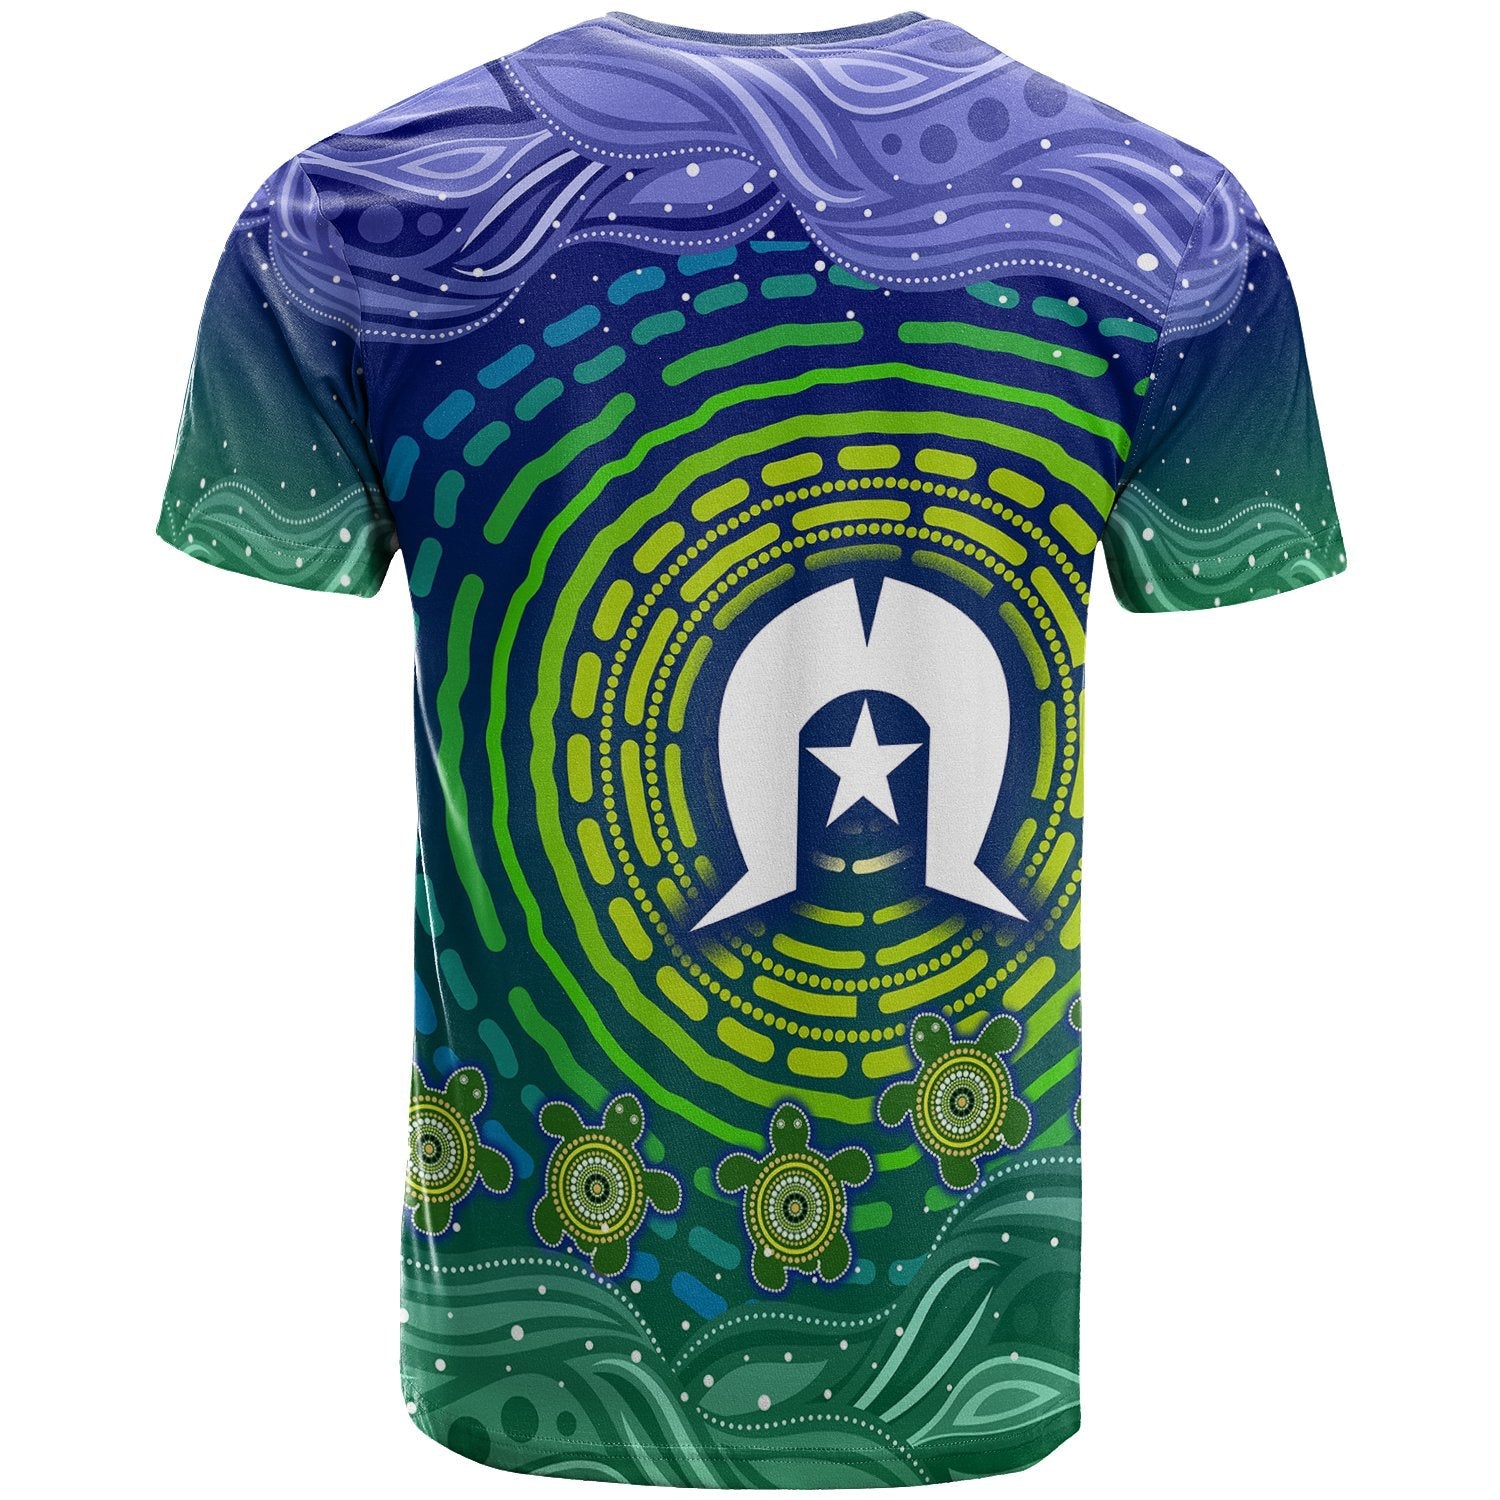 torres-strait-islanders-t-shirt-aboriginal-turtle